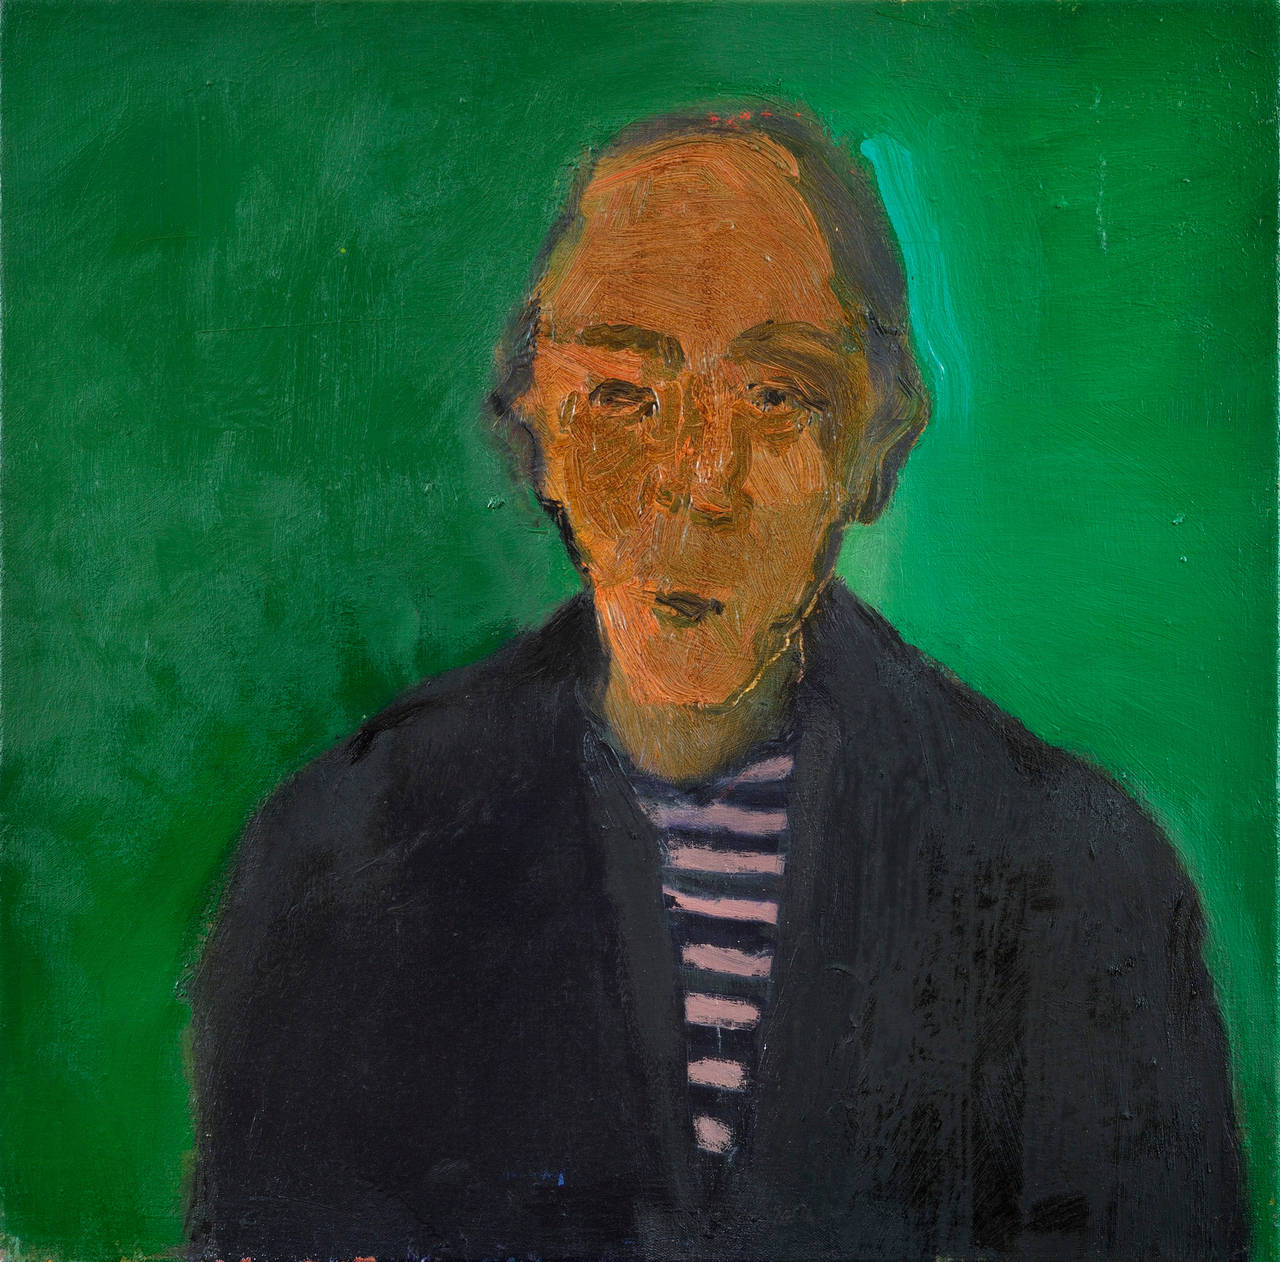 Figurative Painting Jennifer Hornyak - Homme avec chemise rayée - peinture à l'huile - portrait figuratif d'homme vert, nature morte figurative